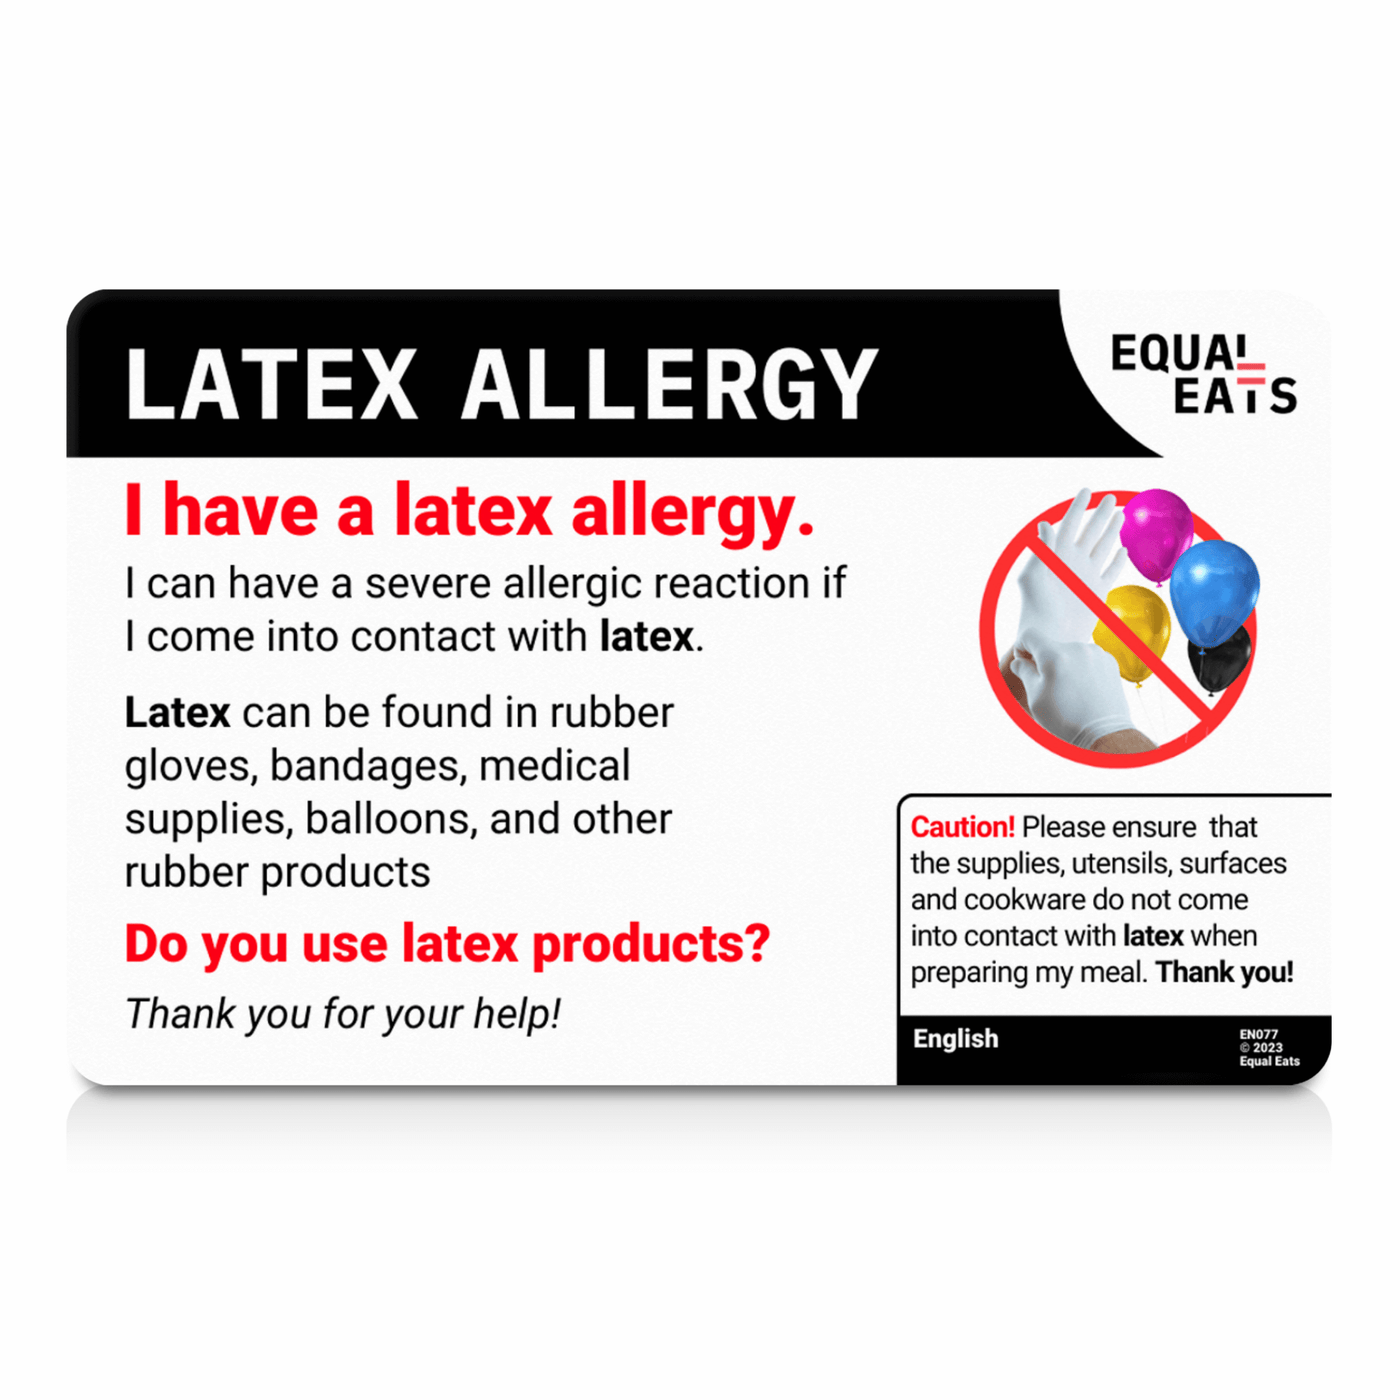 Spanish (Spain) Latex Allergy Card